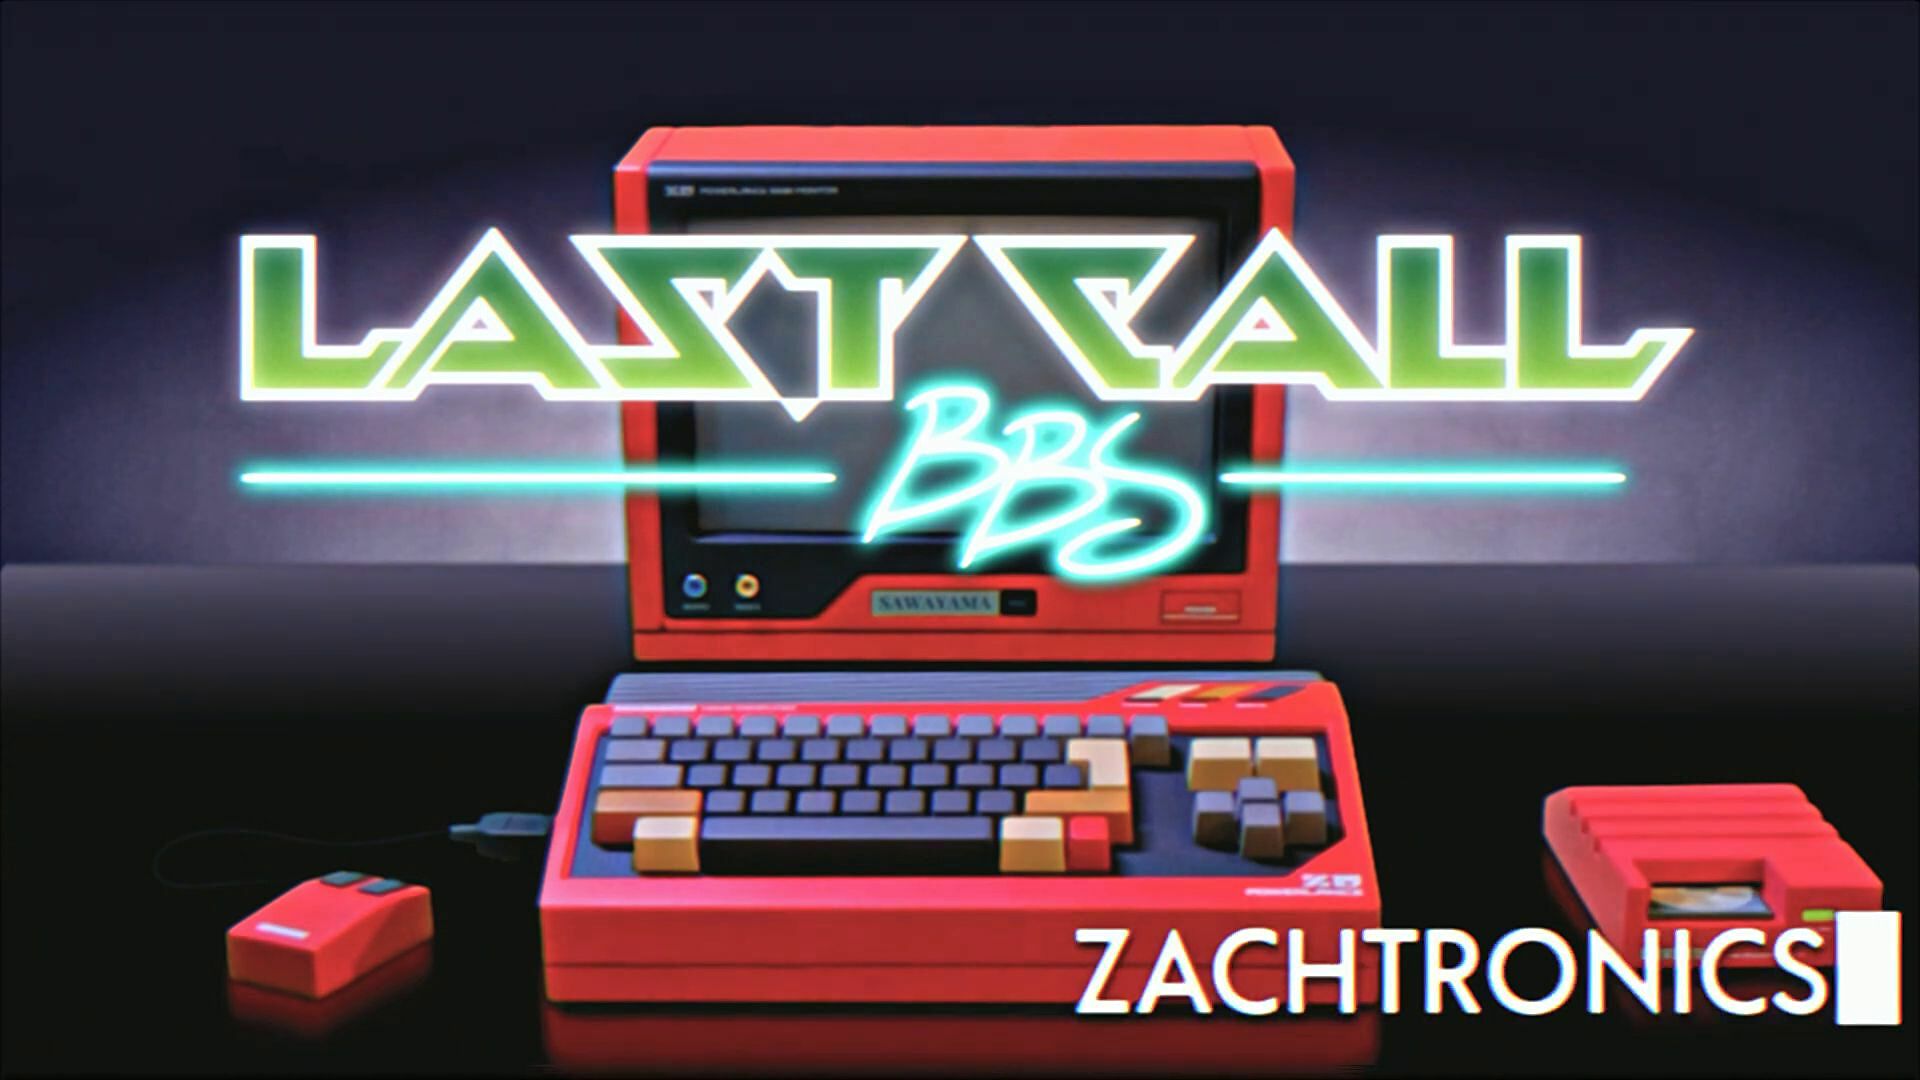 Immagine di Zachtronics sta per chiudere i battenti ma prima pubblicherà un ultimo gioco, Last Call BBS